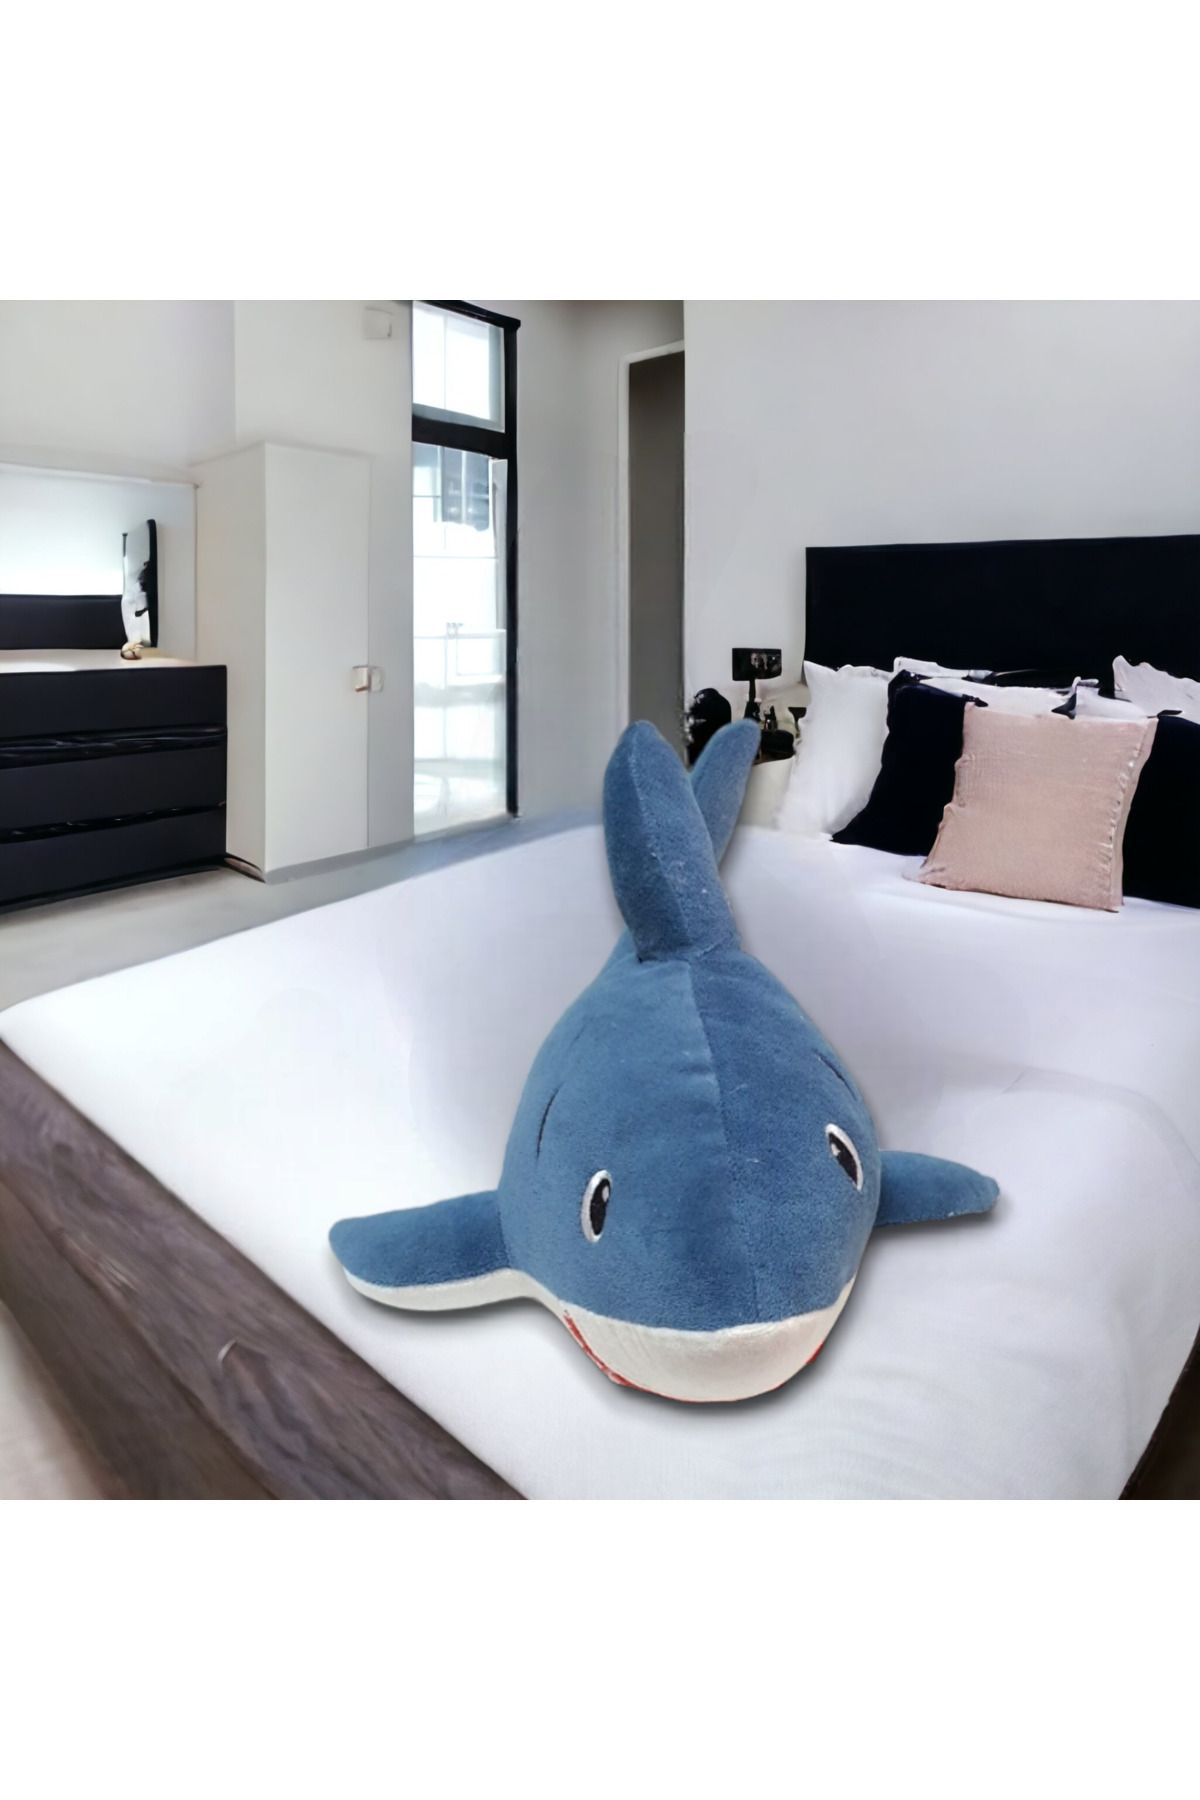 Mellito Toyzz 40 Cm Oyuncak Köpek Balığı Shark Pelus Oyuncak Ve Uyku Arkadasi